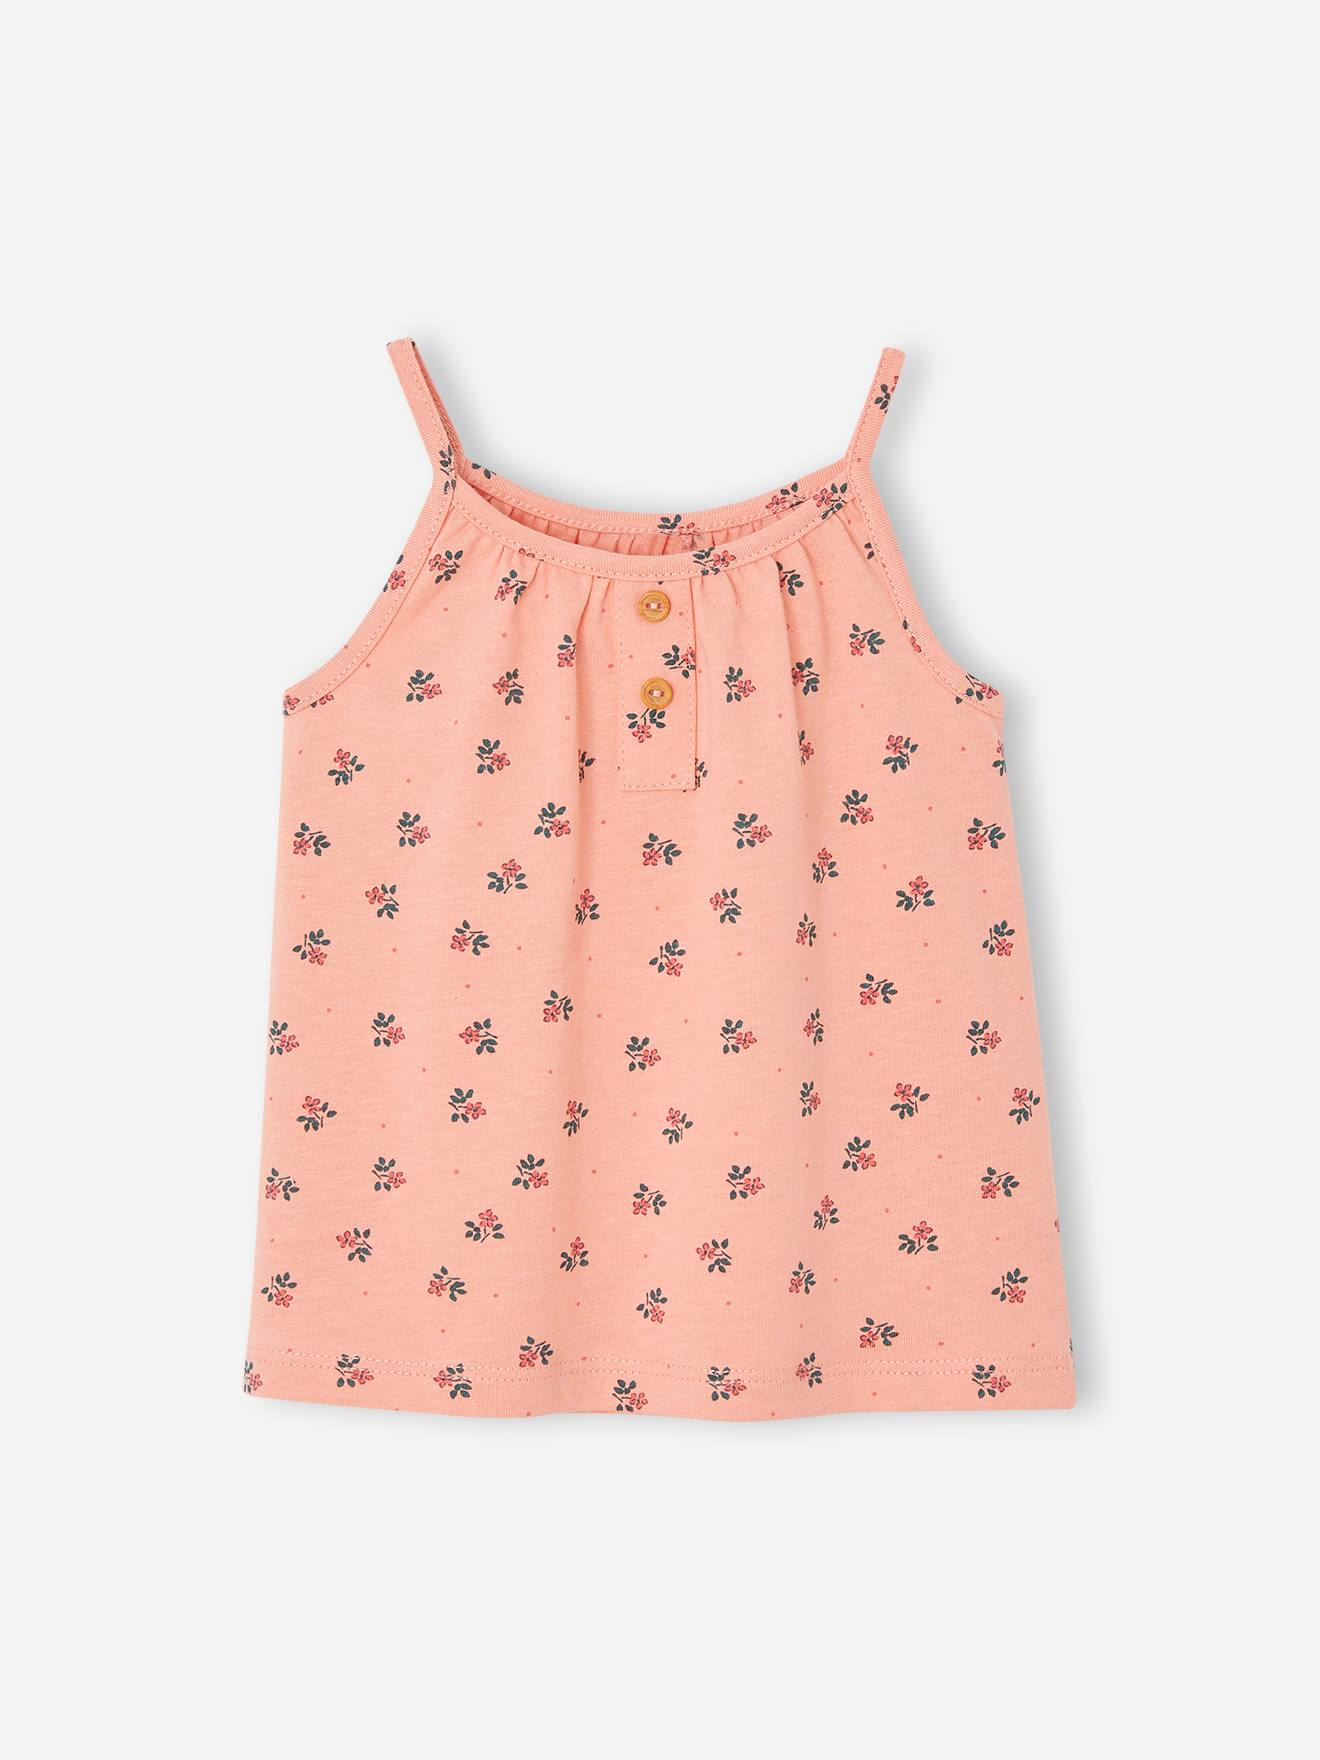 VERTBAUDET Camiseta sin mangas de rayas finas con tirantes, para bebé rosa